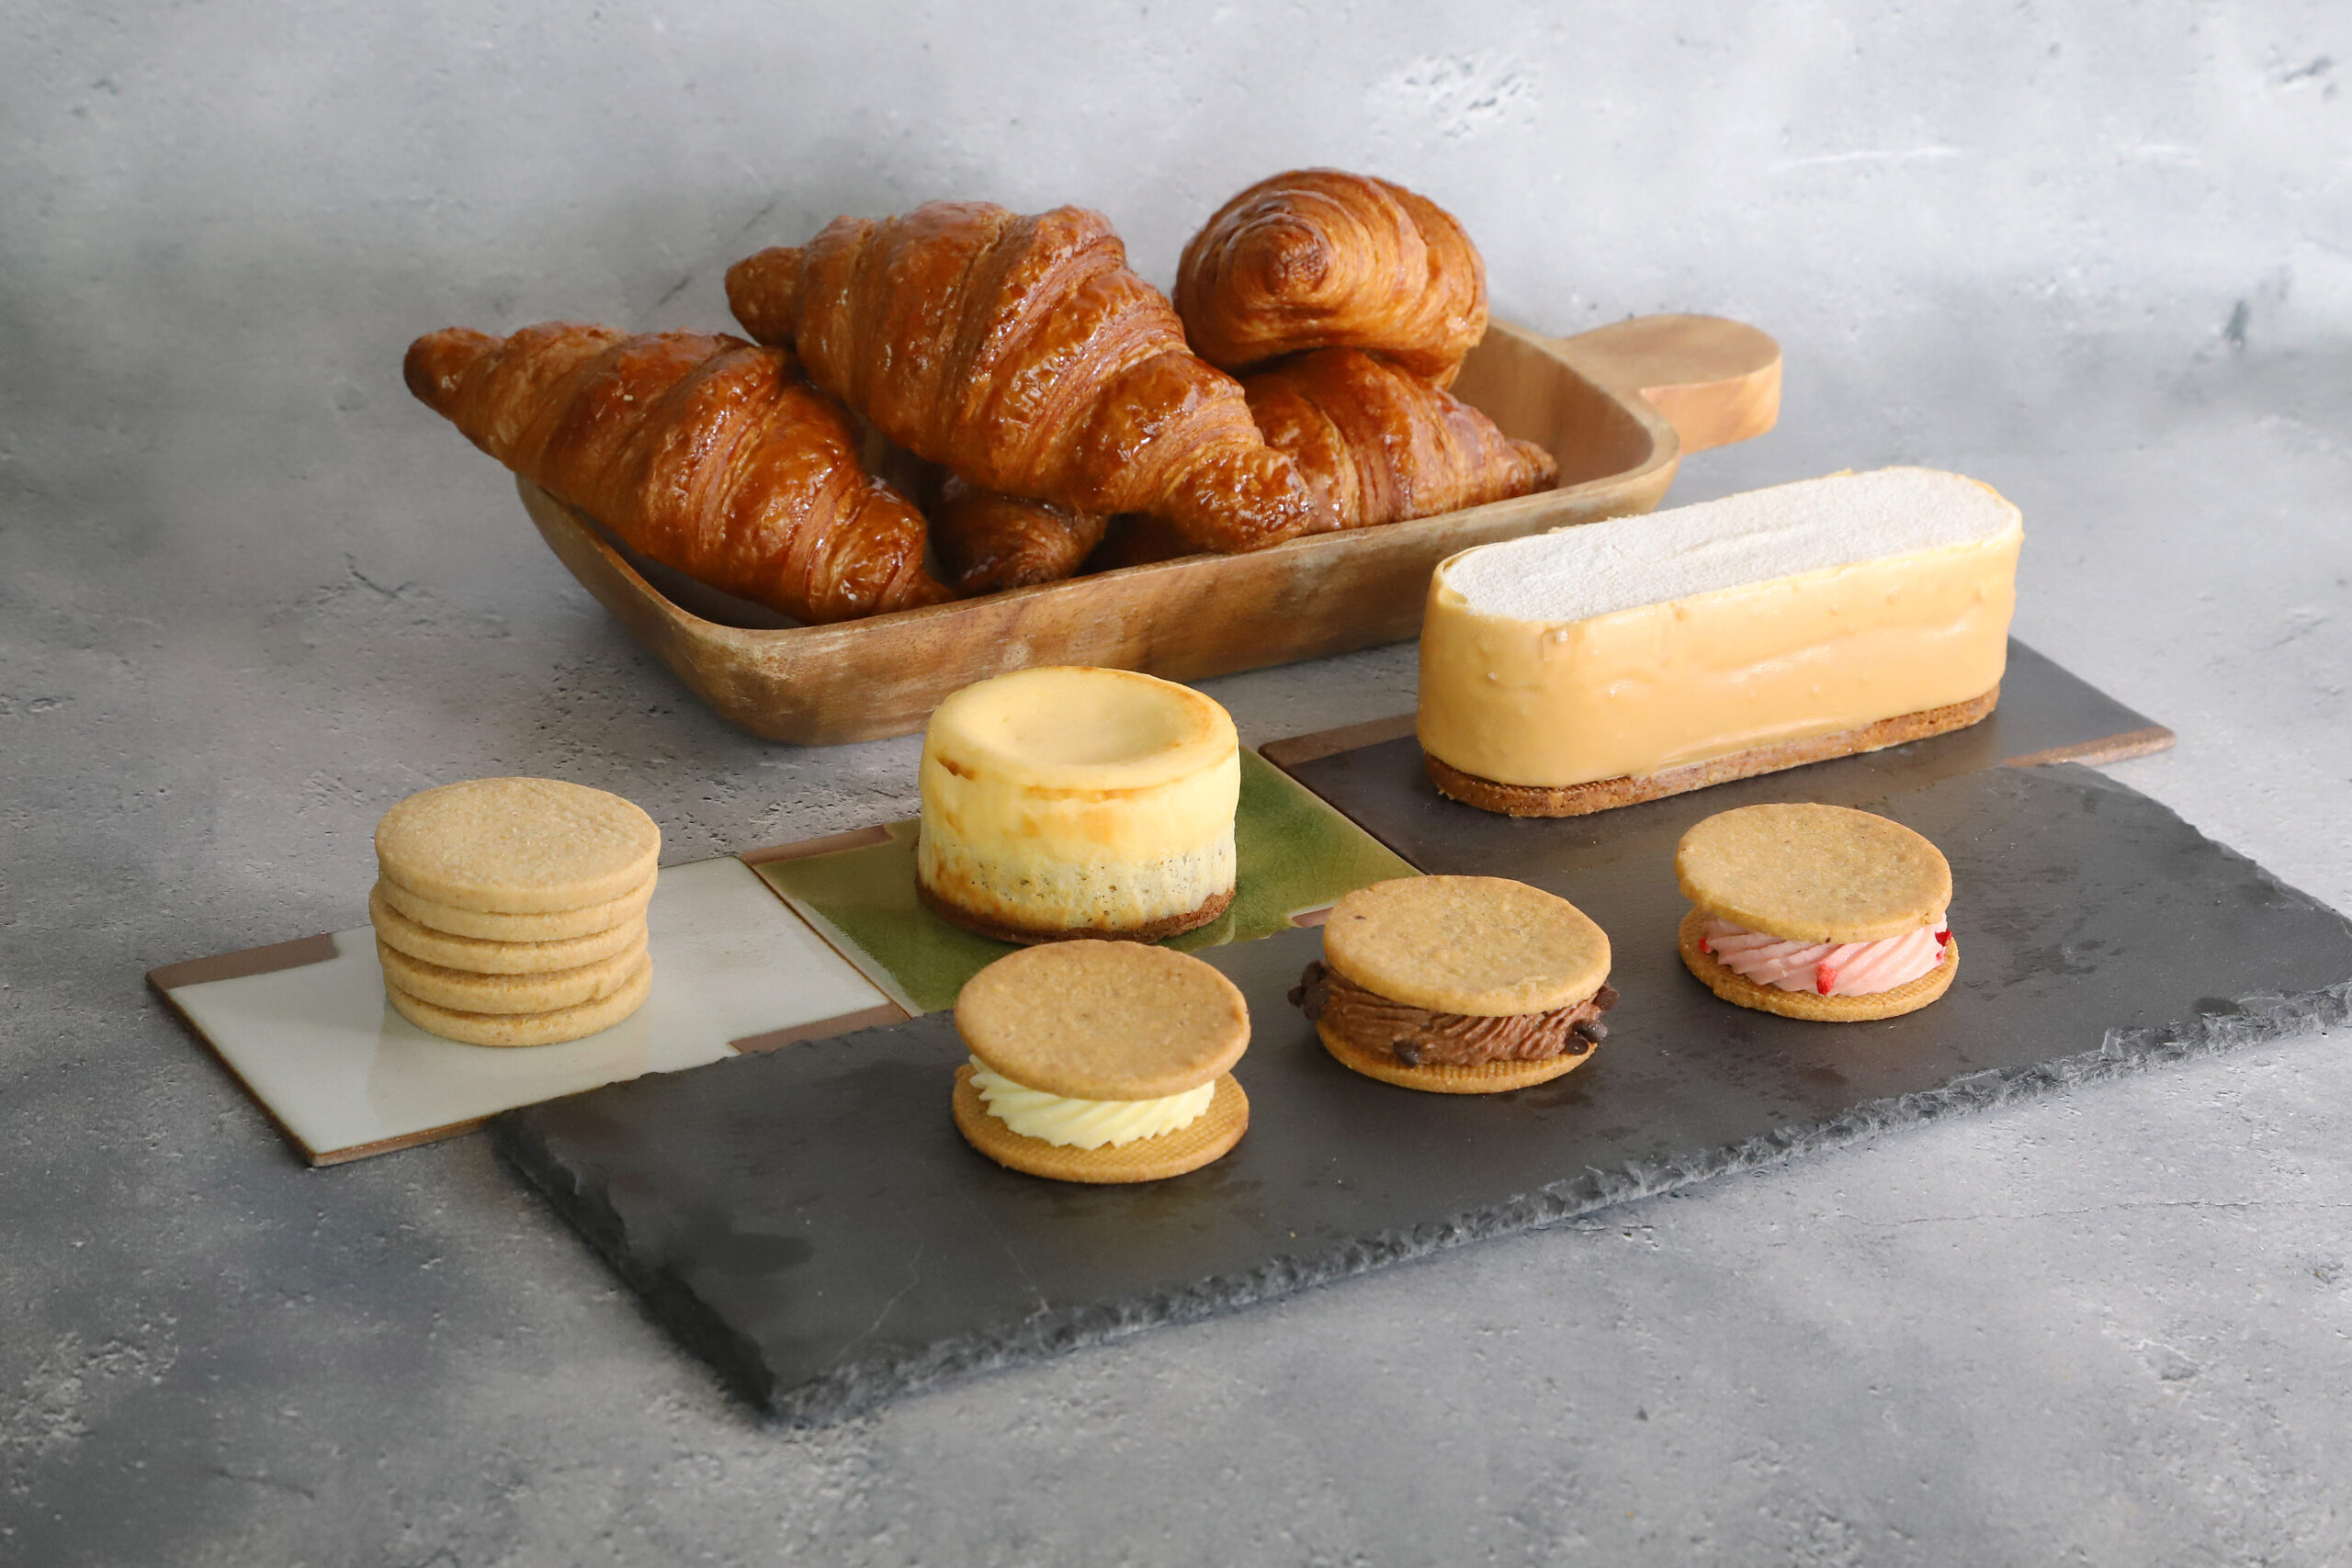 サクサクのクッキーとなめらかな口当たりのチーズクリームが一緒になった「RAKUTOチーズバターサンド」をメイン商品に、長年経験を積んだパティシエが開発した新たなオリジナルチーズスイーツを提供する。